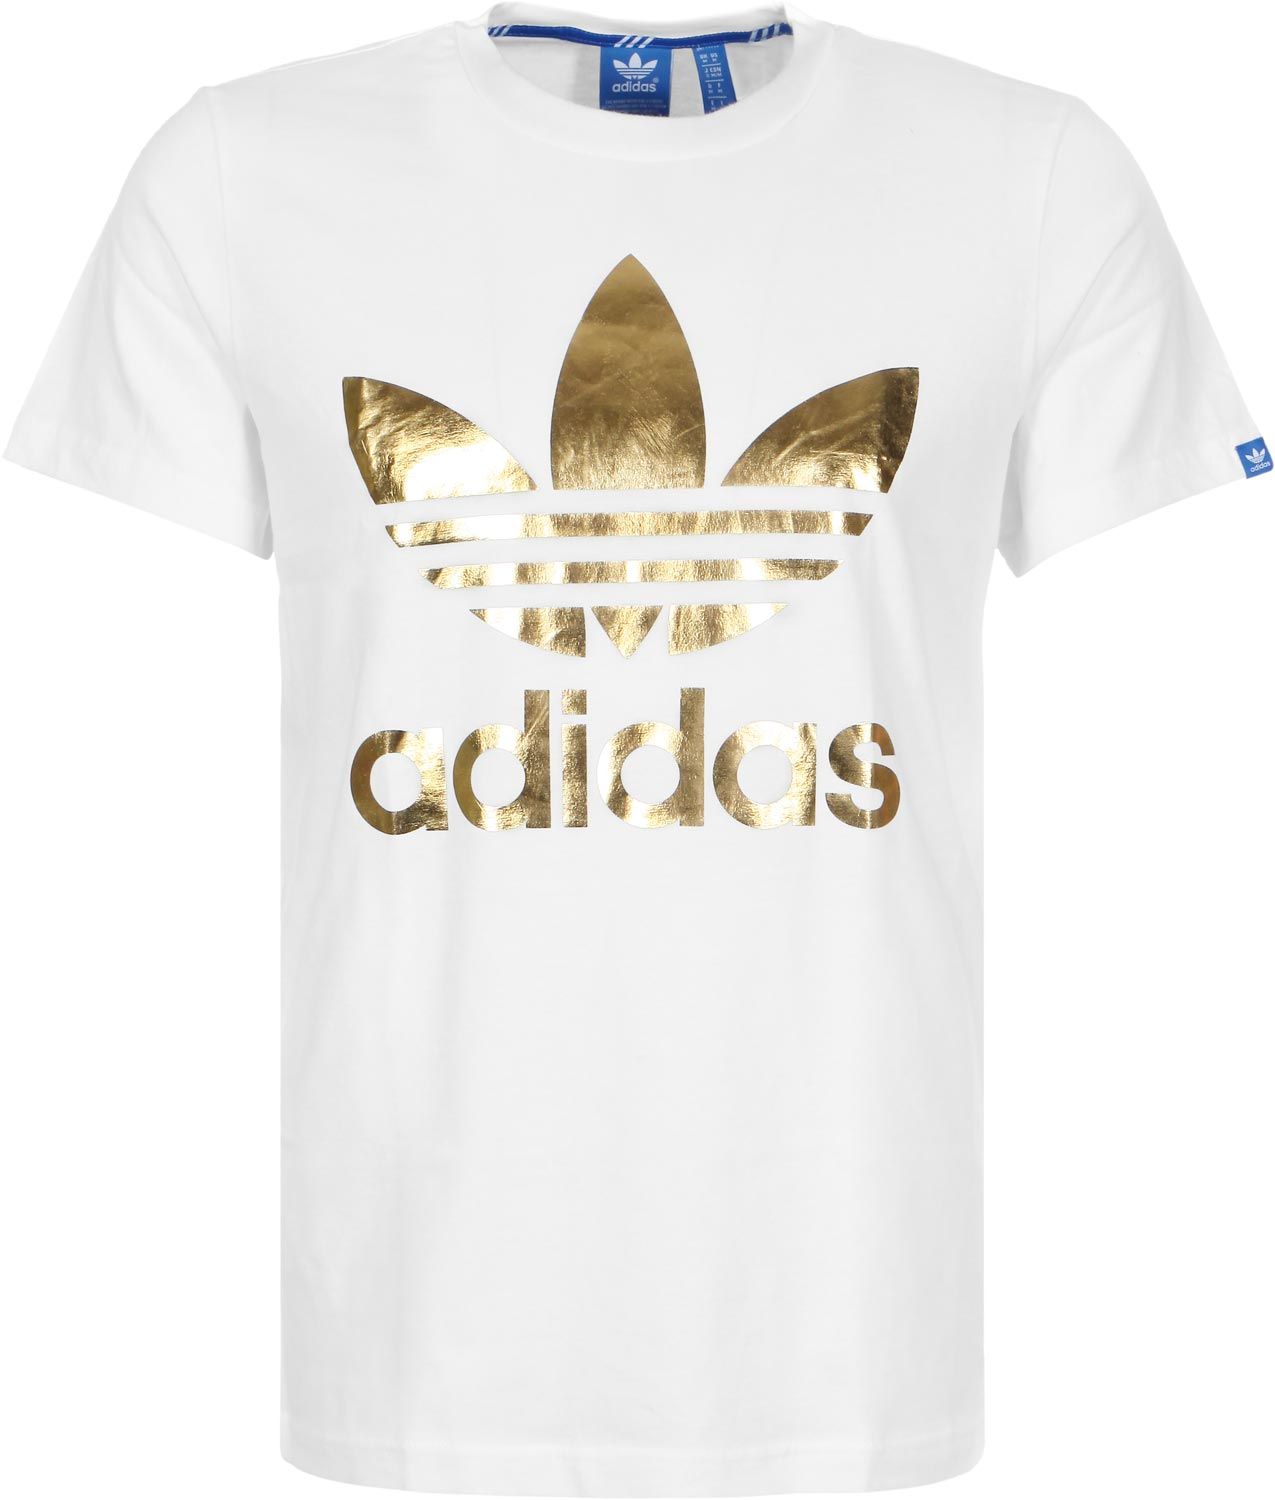 Adidas Shirt Gold Logos